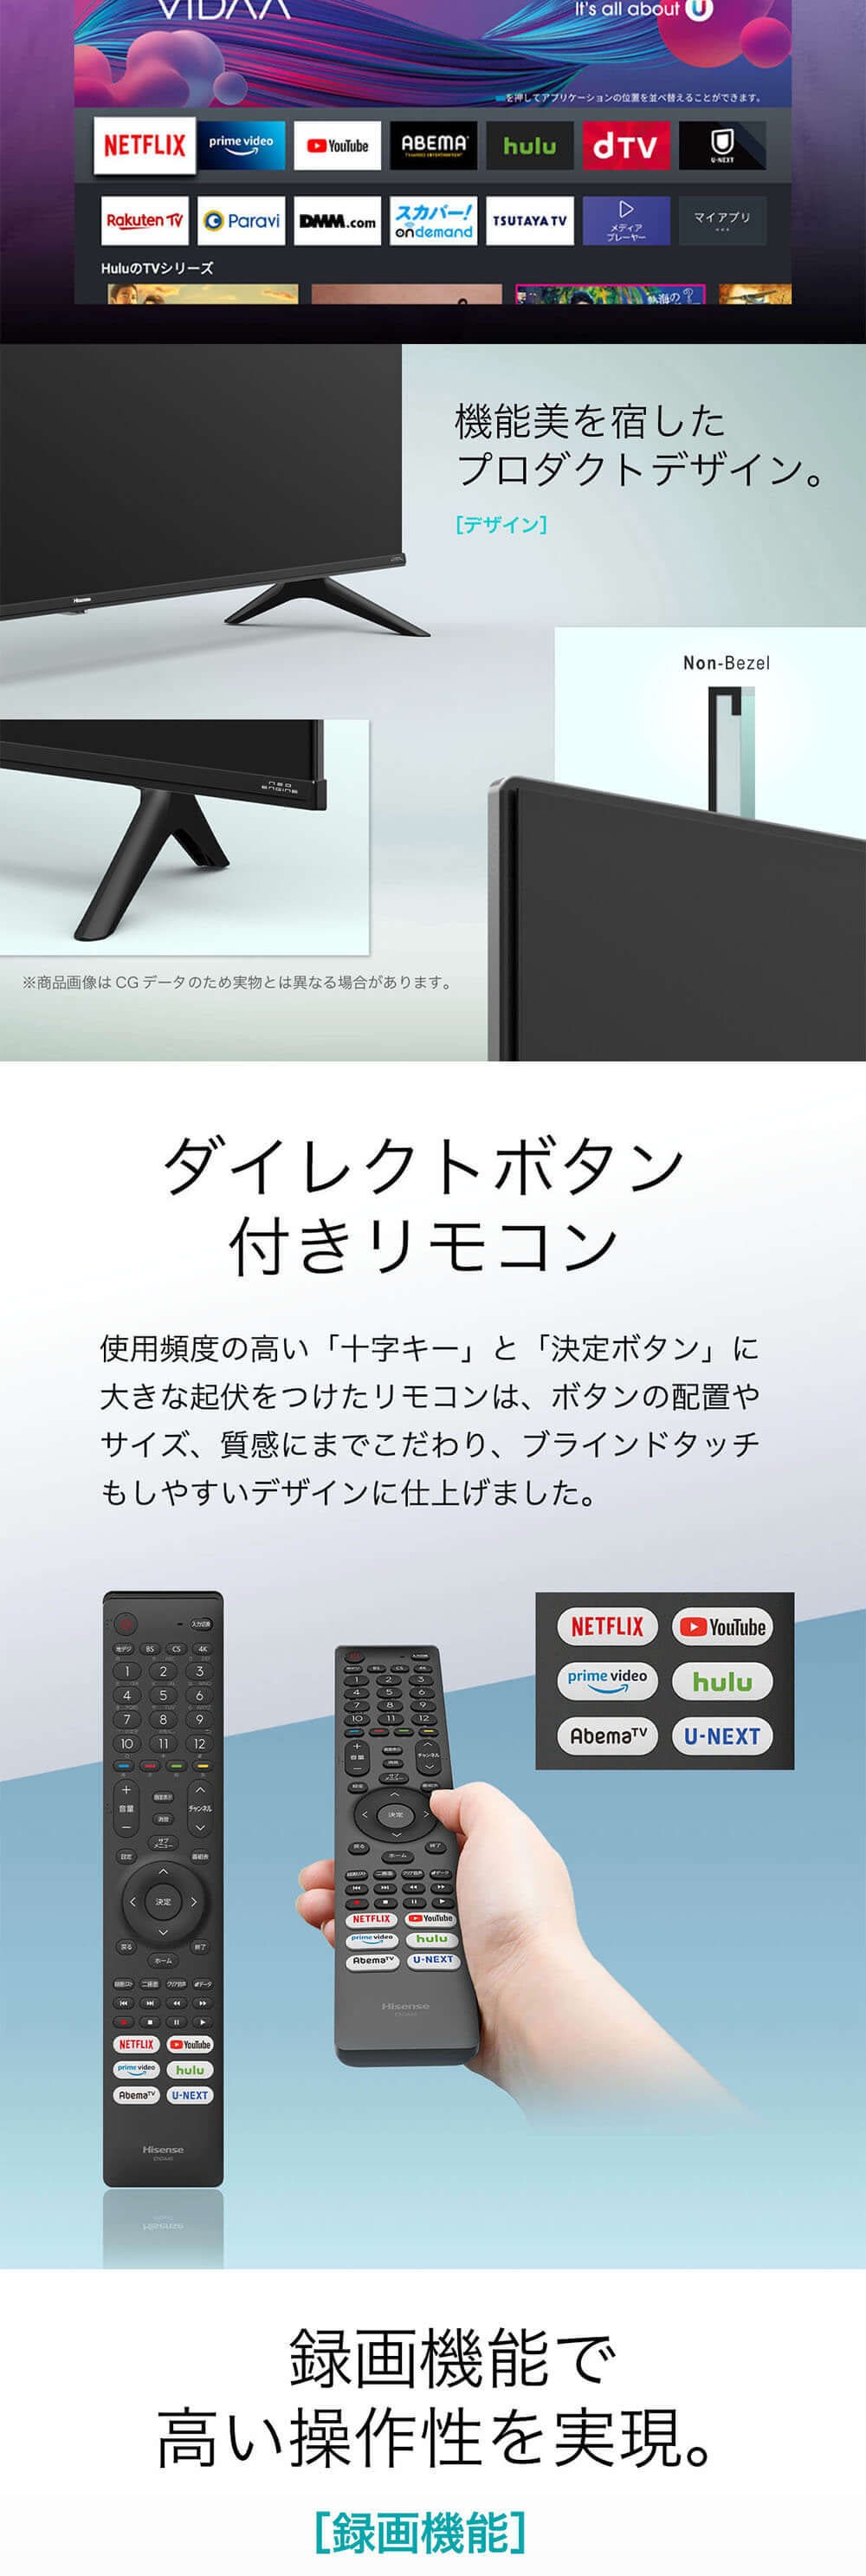 テレビ 50型 液晶テレビ ハイセンス Hisense 50インチ TV 4Kテレビ 4K 